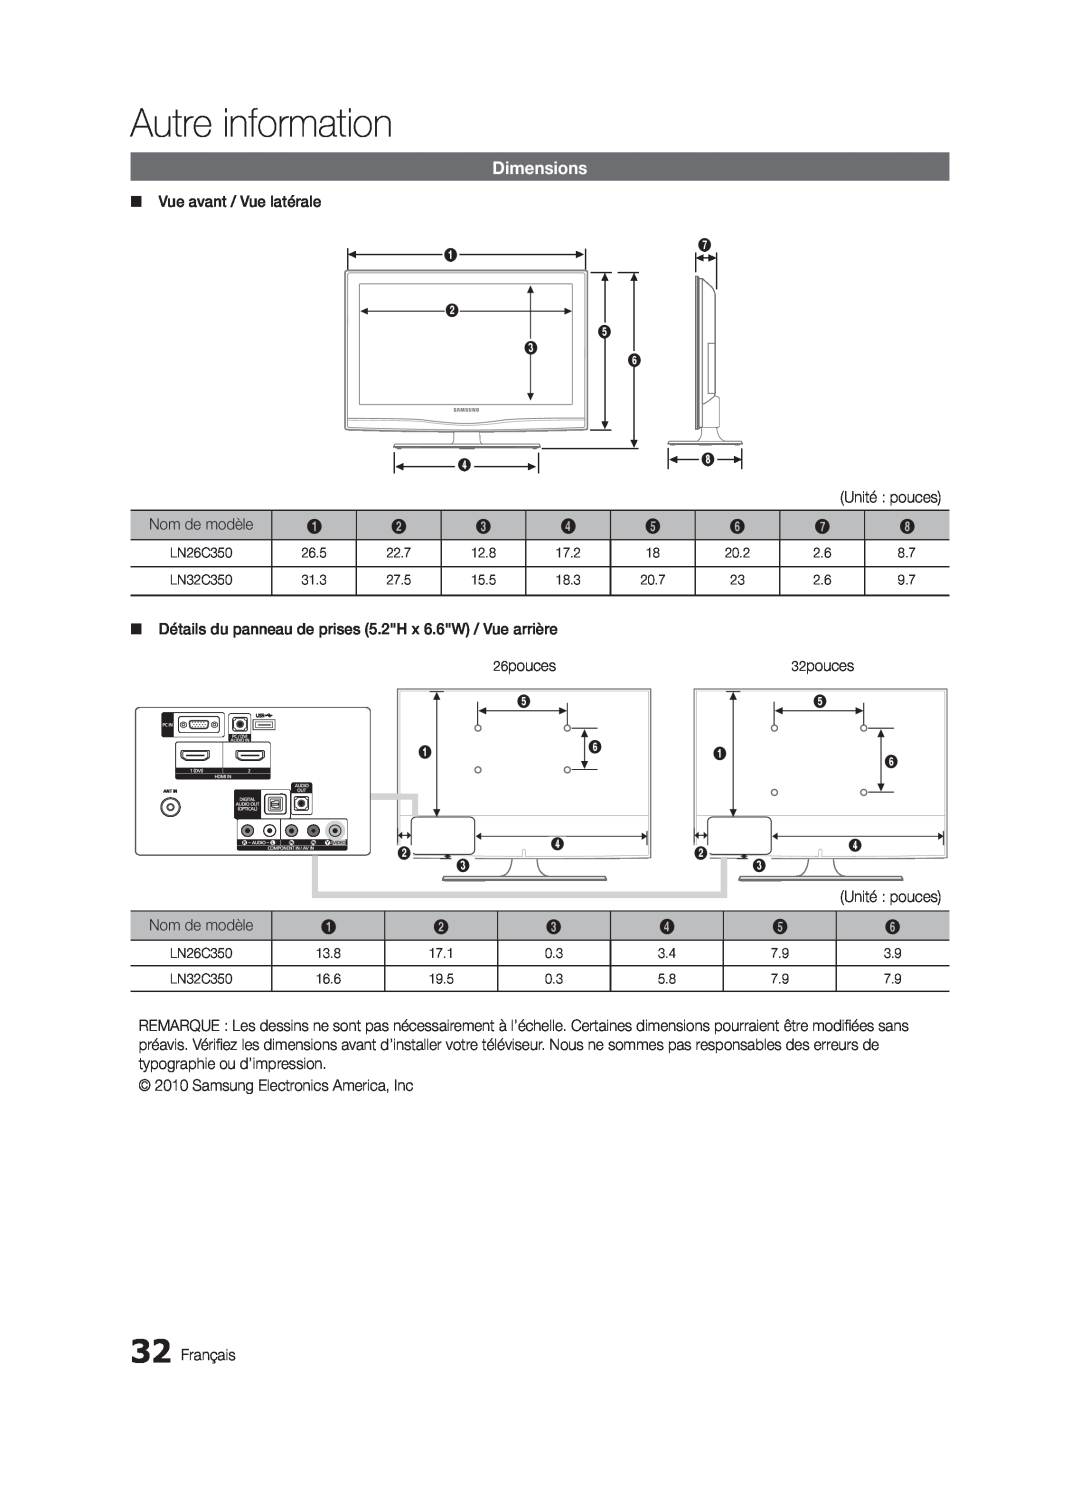 Samsung BN68-02620B-06 user manual Autre information, Dimensions, Unité pouces 